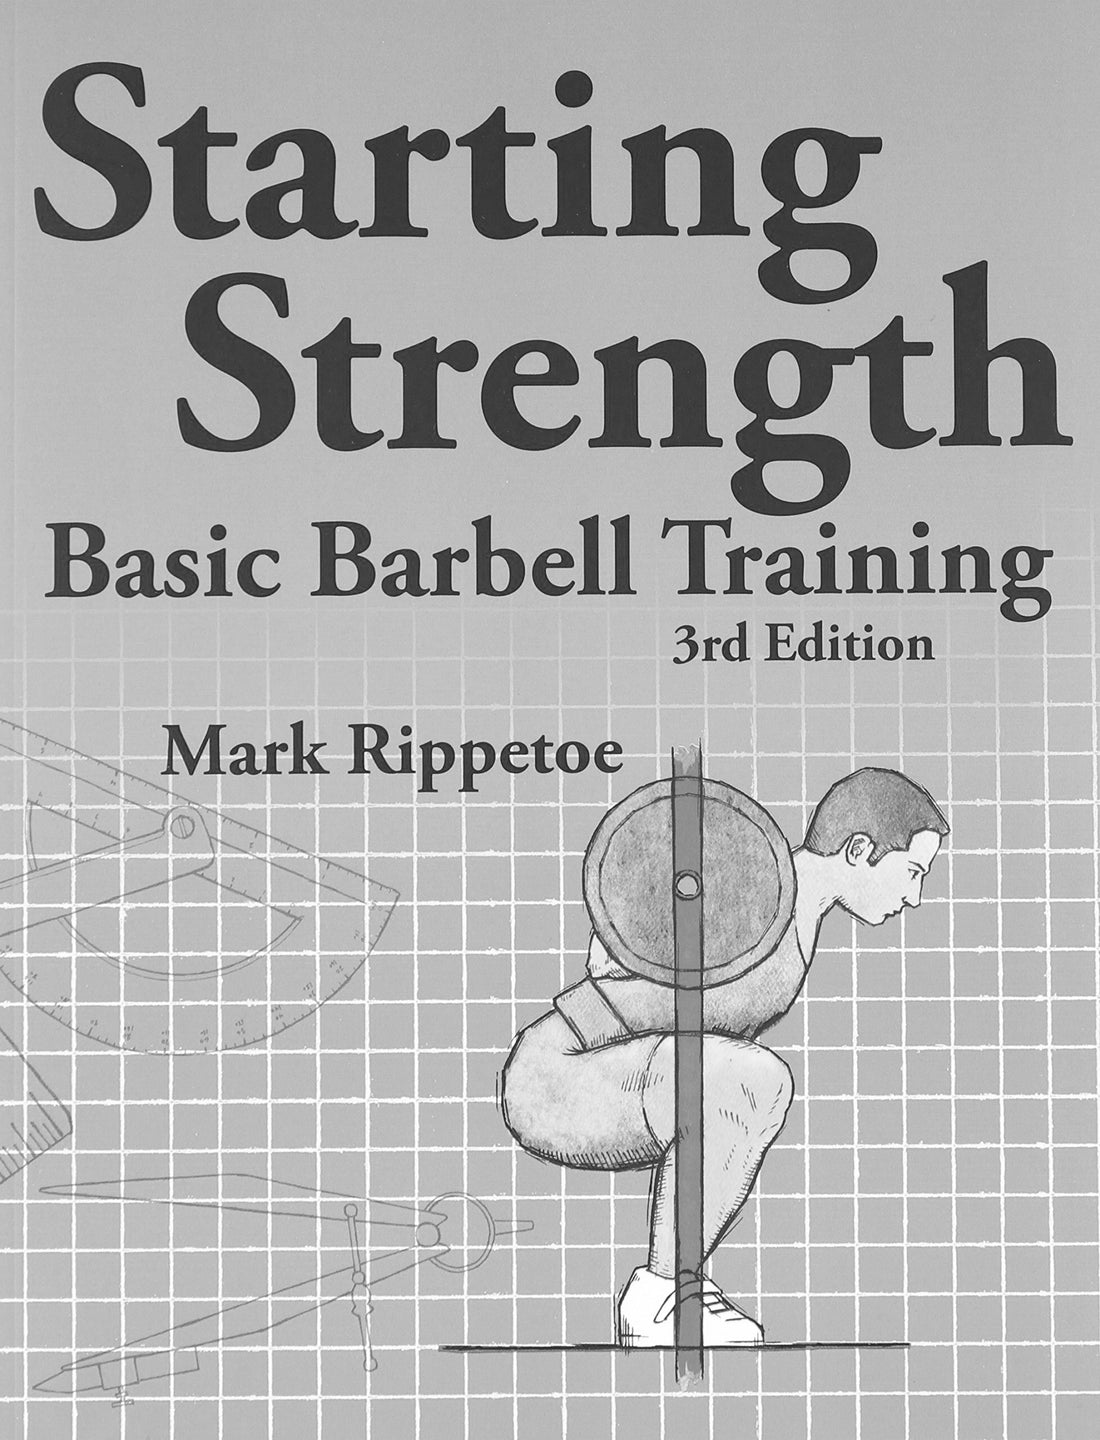 The Basics of Starting Strength Explained